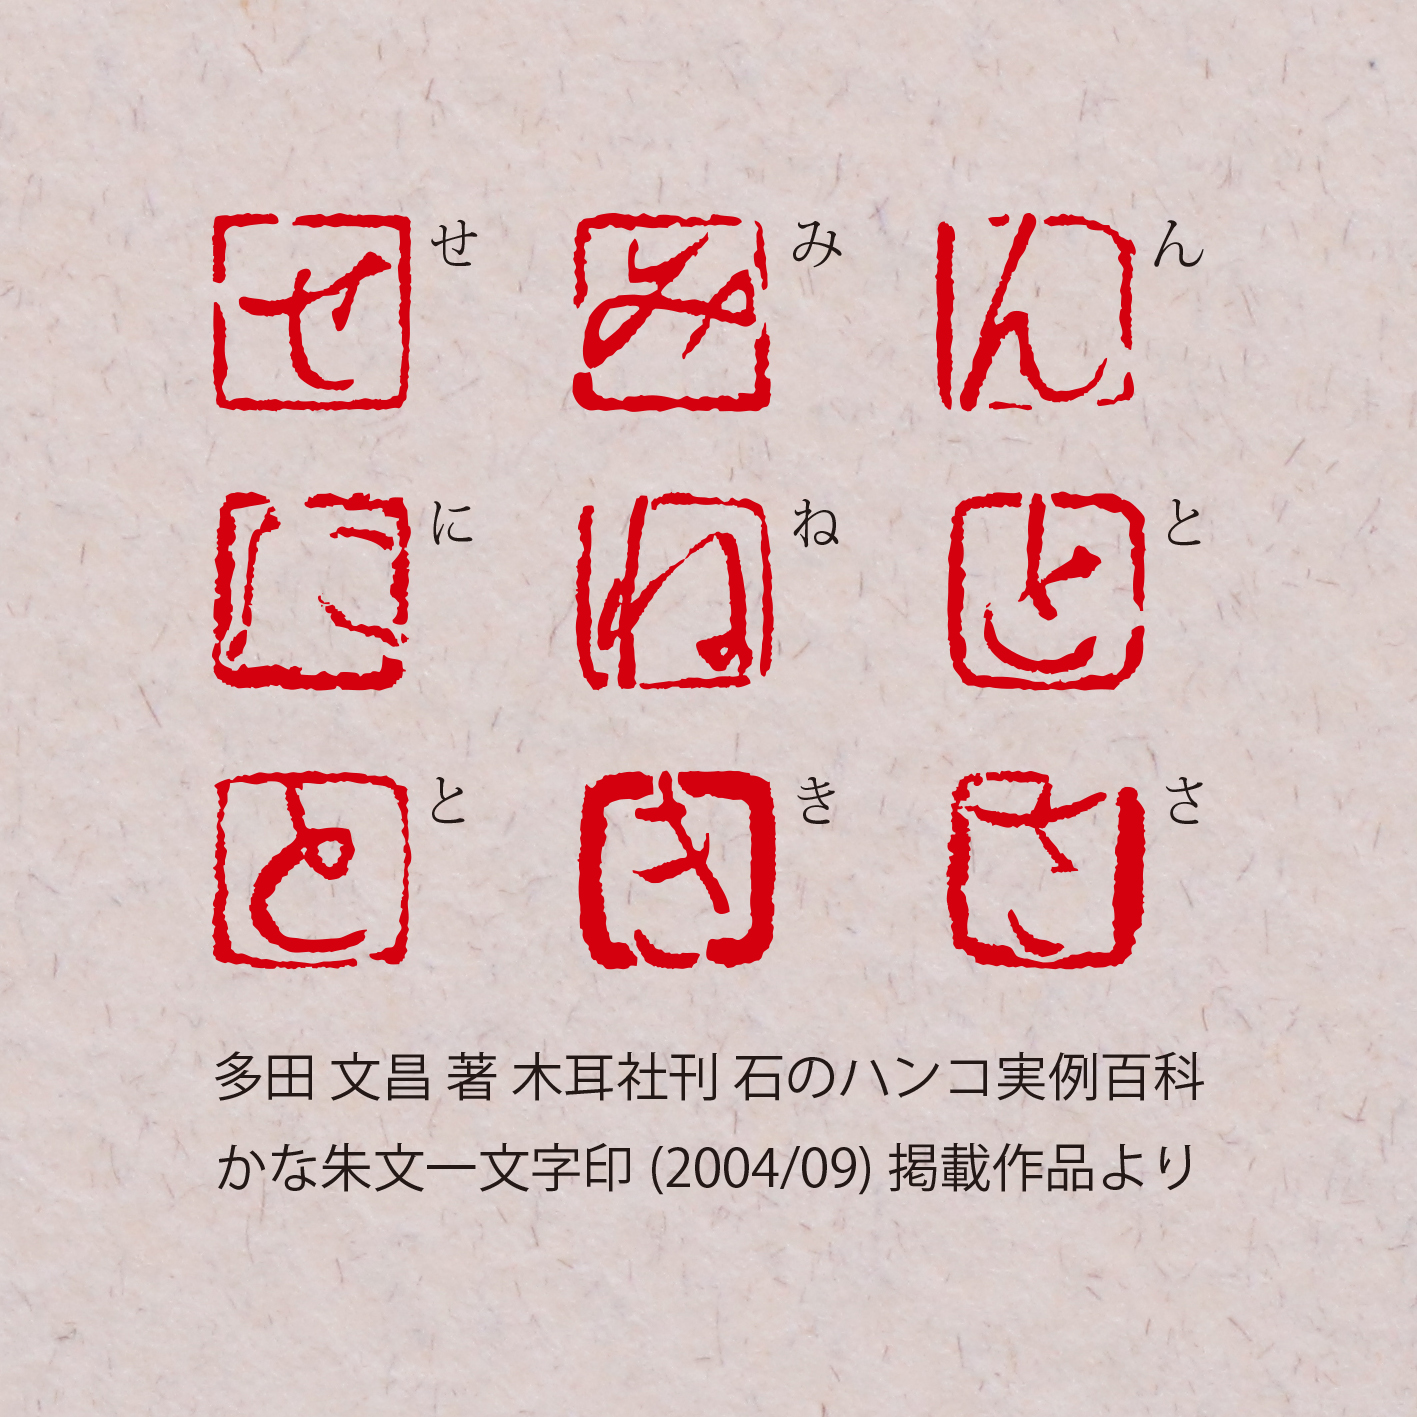 かな 朱文一文字印 篆刻カスタムオーダー Iichi ハンドメイド クラフト作品 手仕事品の通販